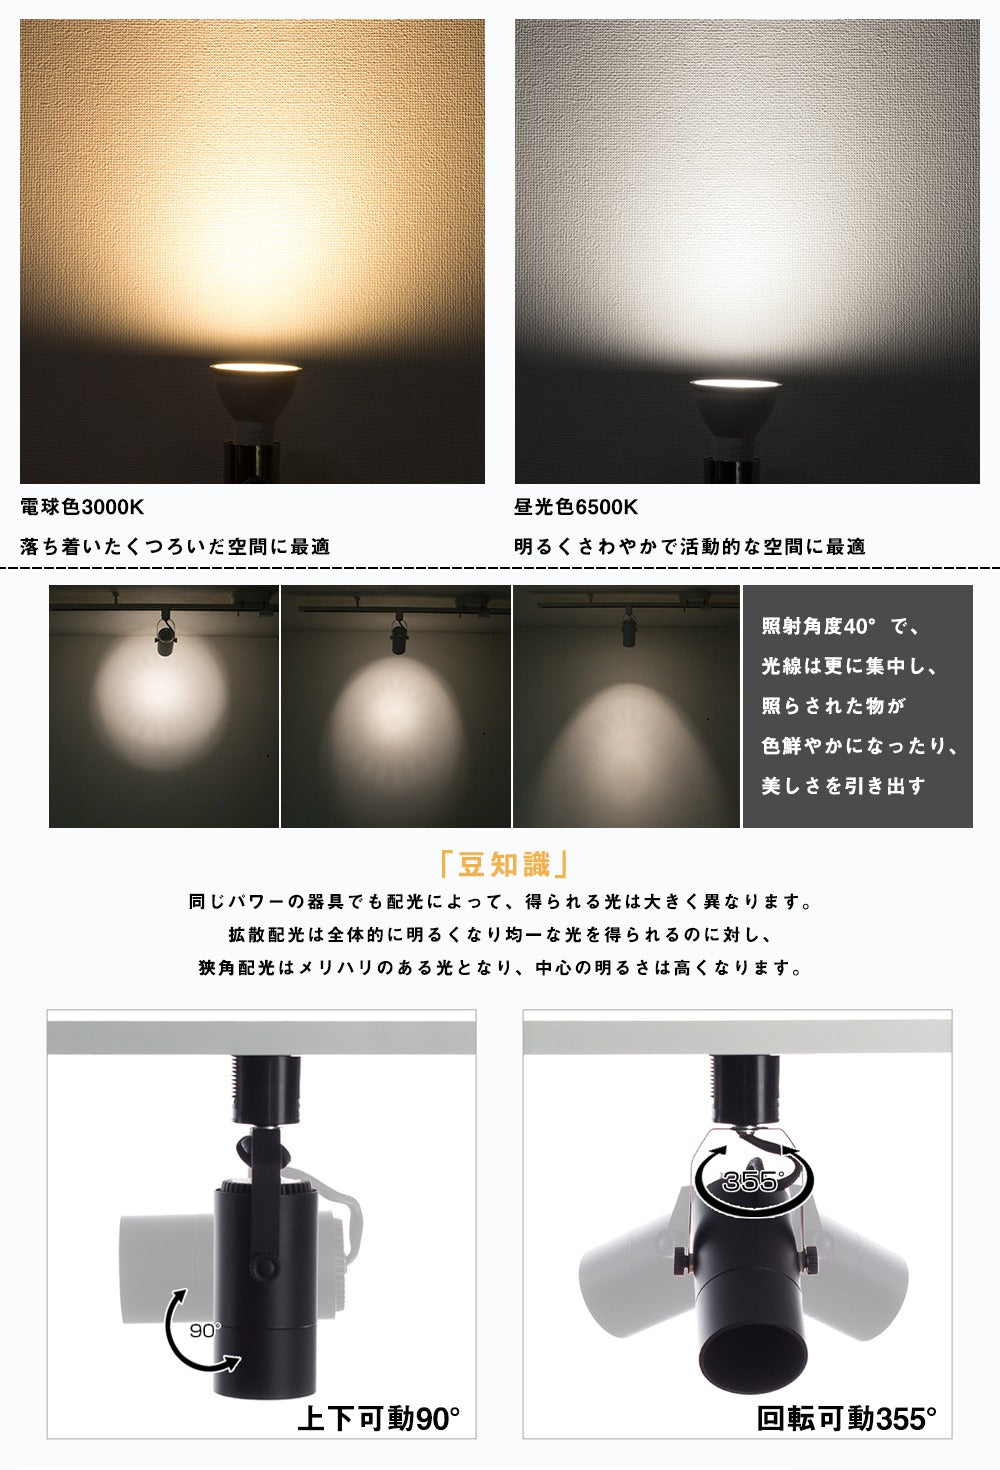 【SETGD-ZT-6E11】50W形 LEDスポットライト E11 ハロゲンランプ 電球色 昼光色 ビーム角38° 展示用スポット